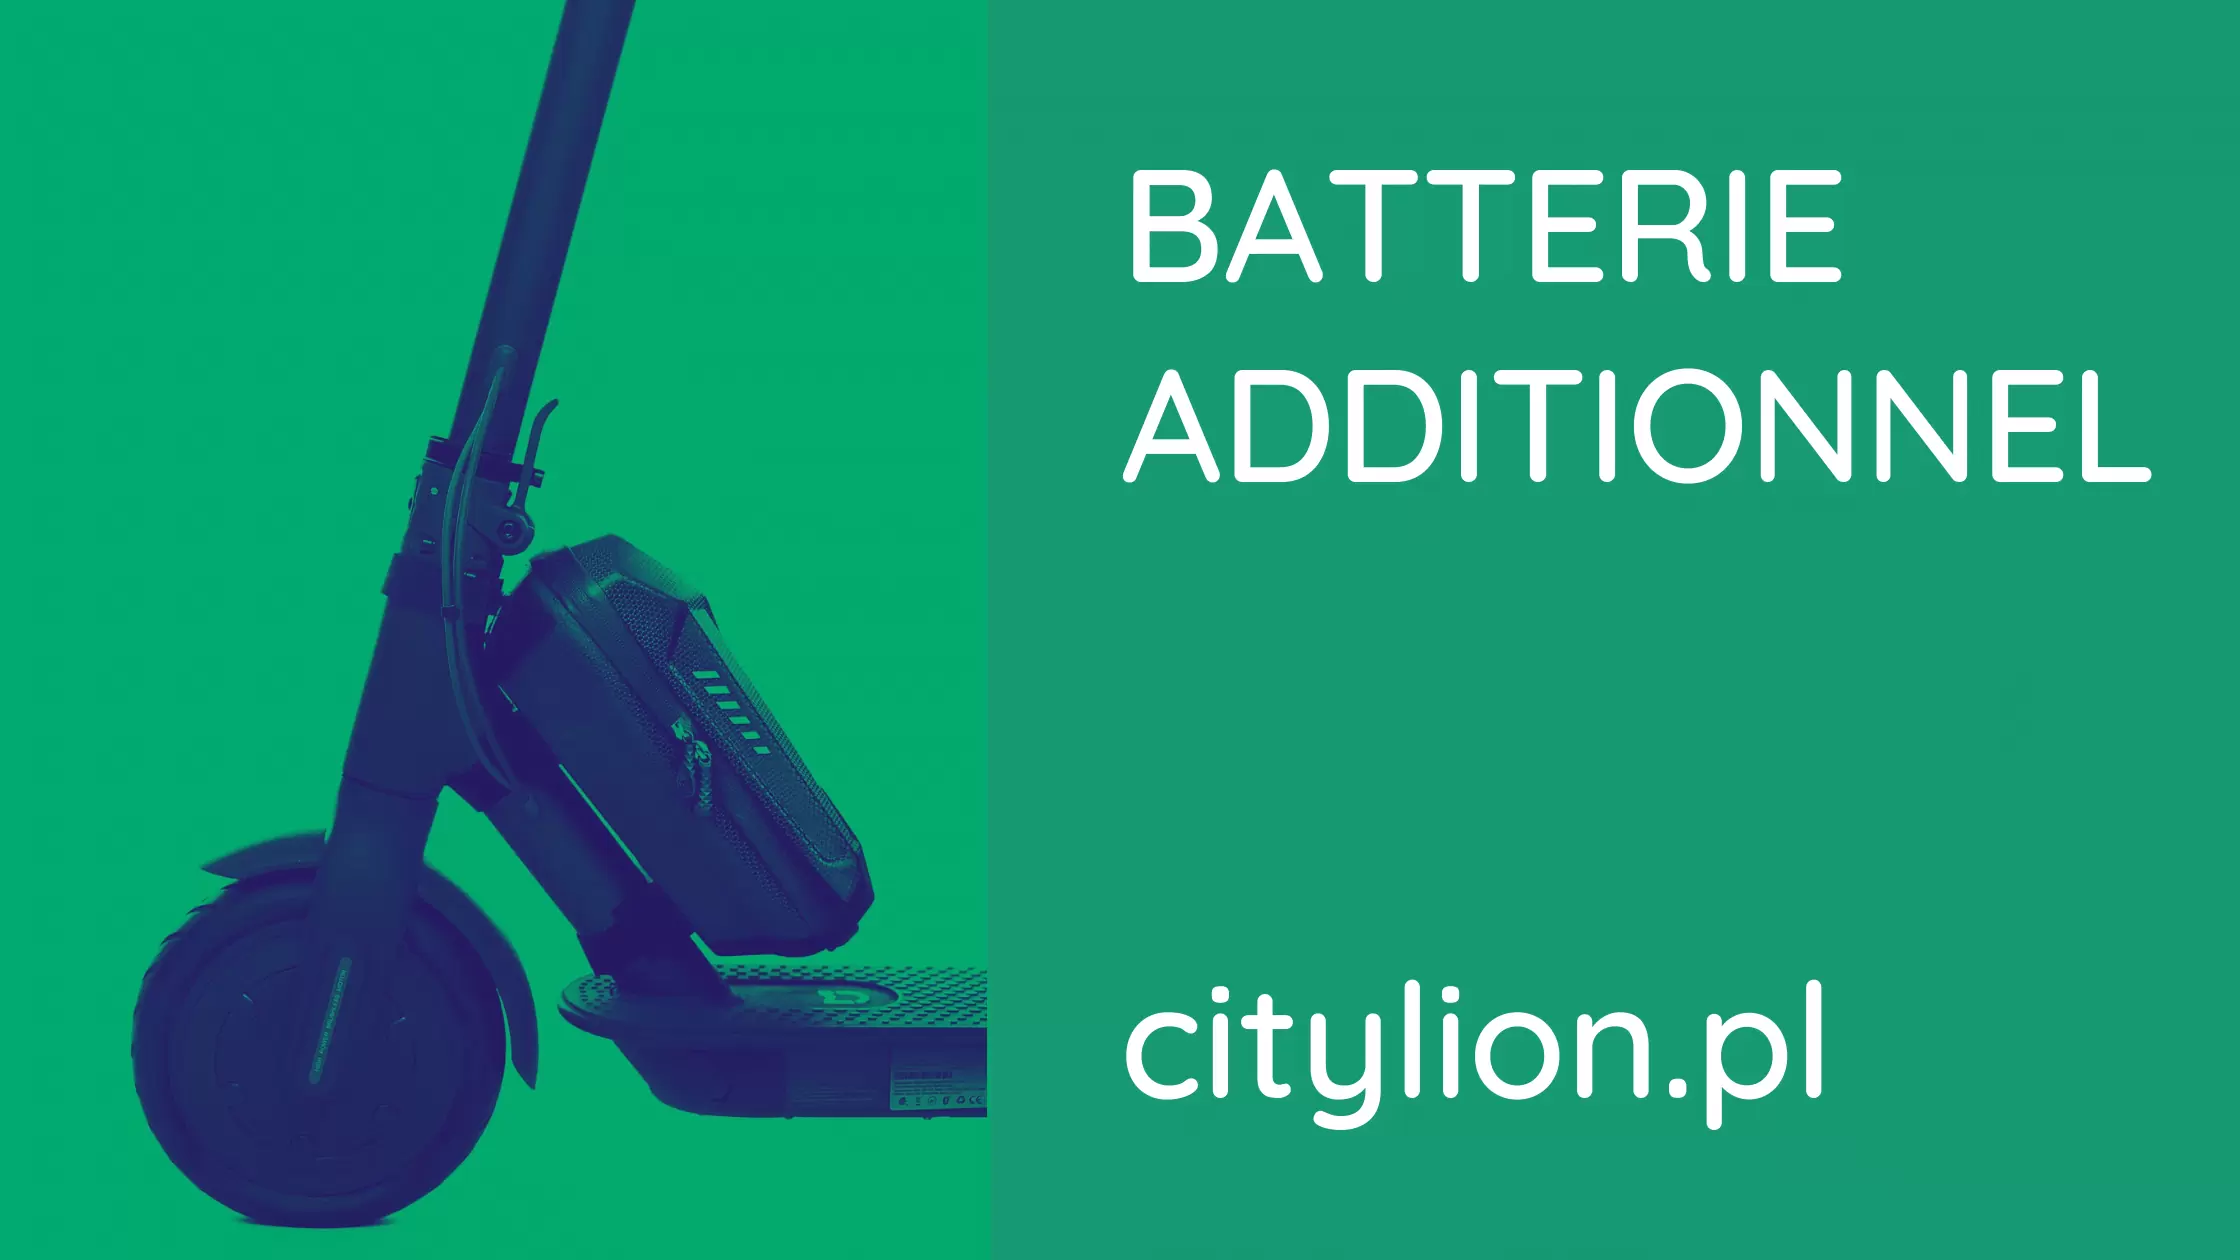 Comment fonctionne la batterie additionnelle pour les scooters électriques ?